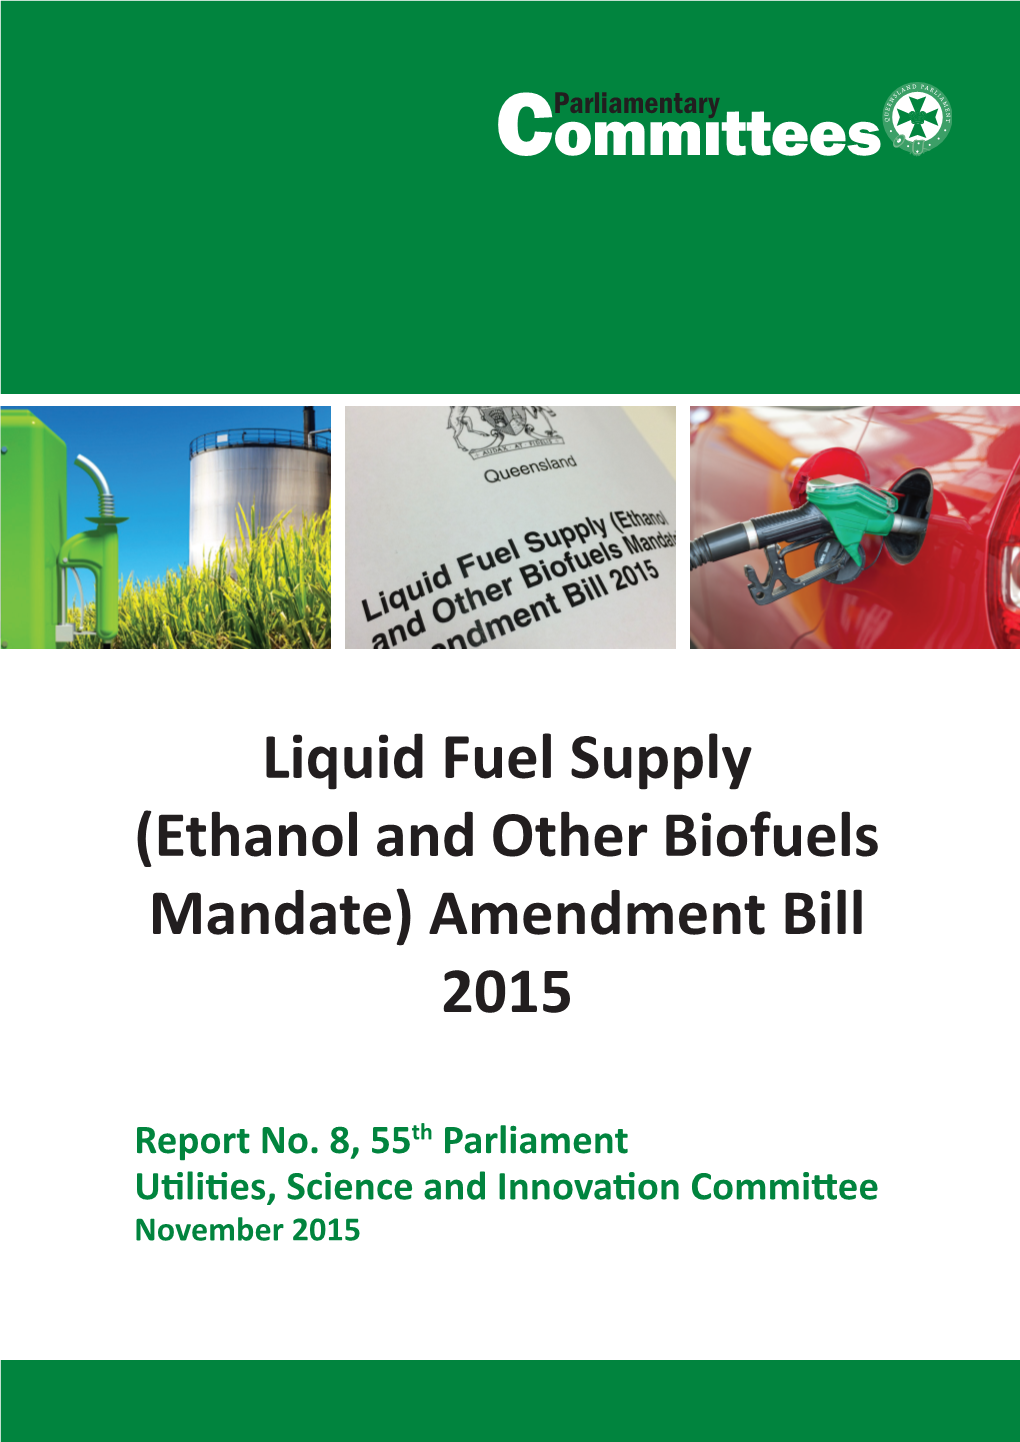 (Ethanol and Other Biofuels Mandate) Amendment Bill 2015